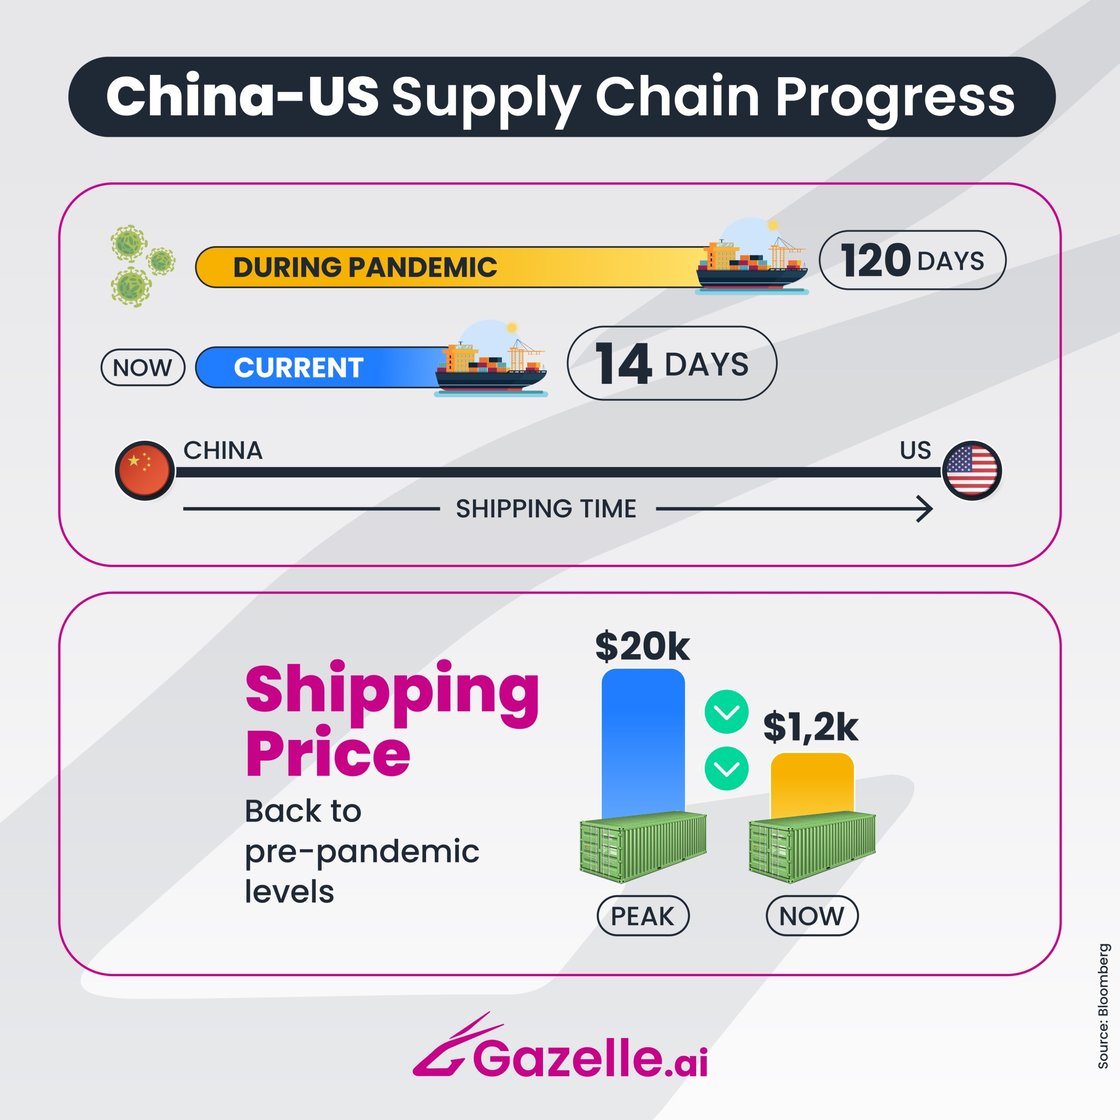 Gazelle China-US Supply Chain Progress2048-1